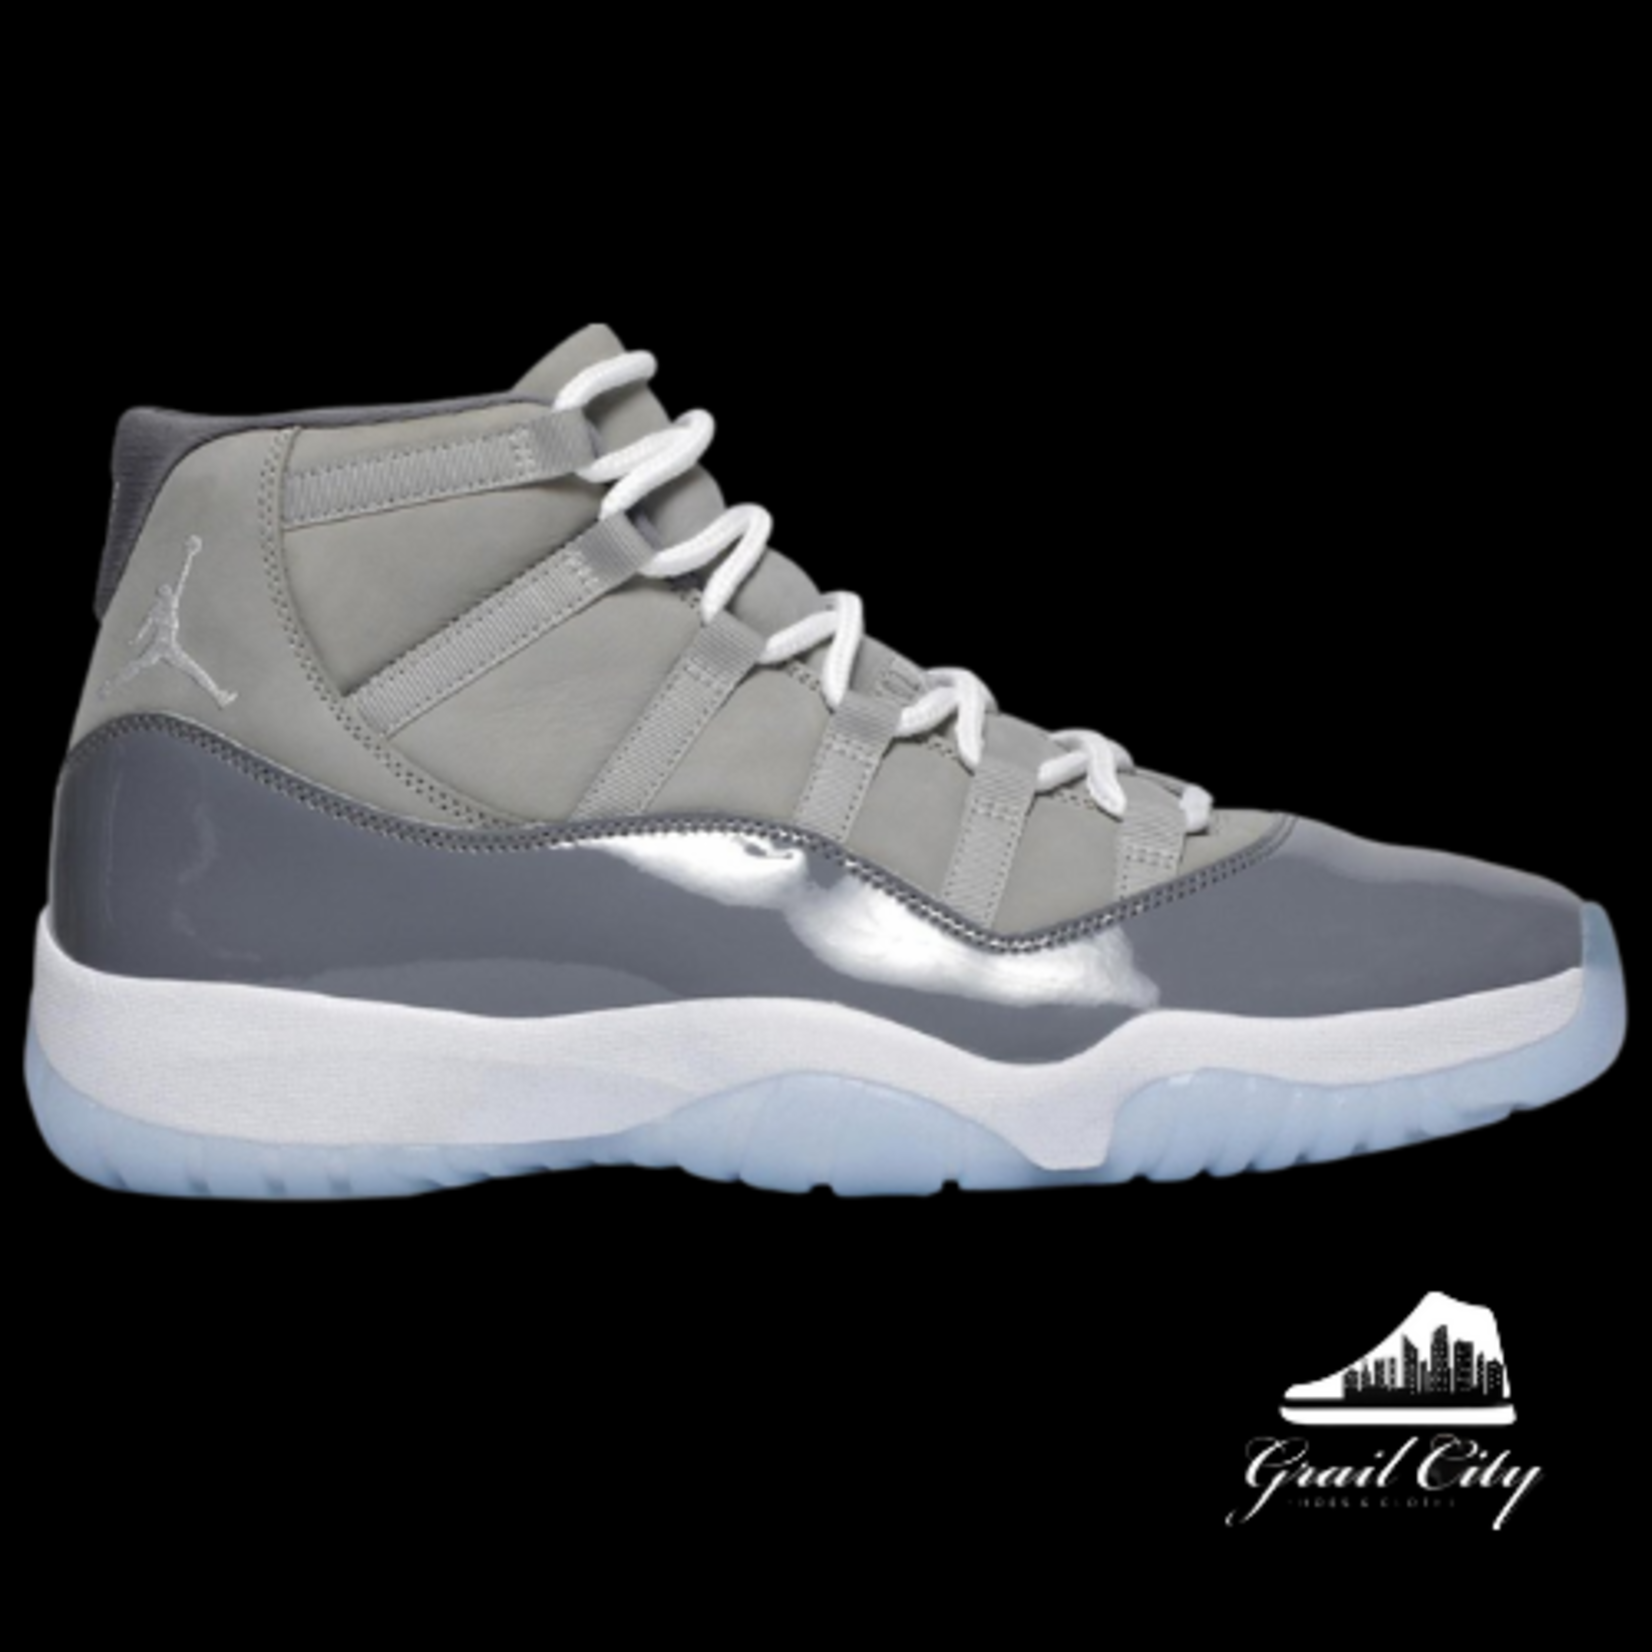 Jordan 11 Cool Grey